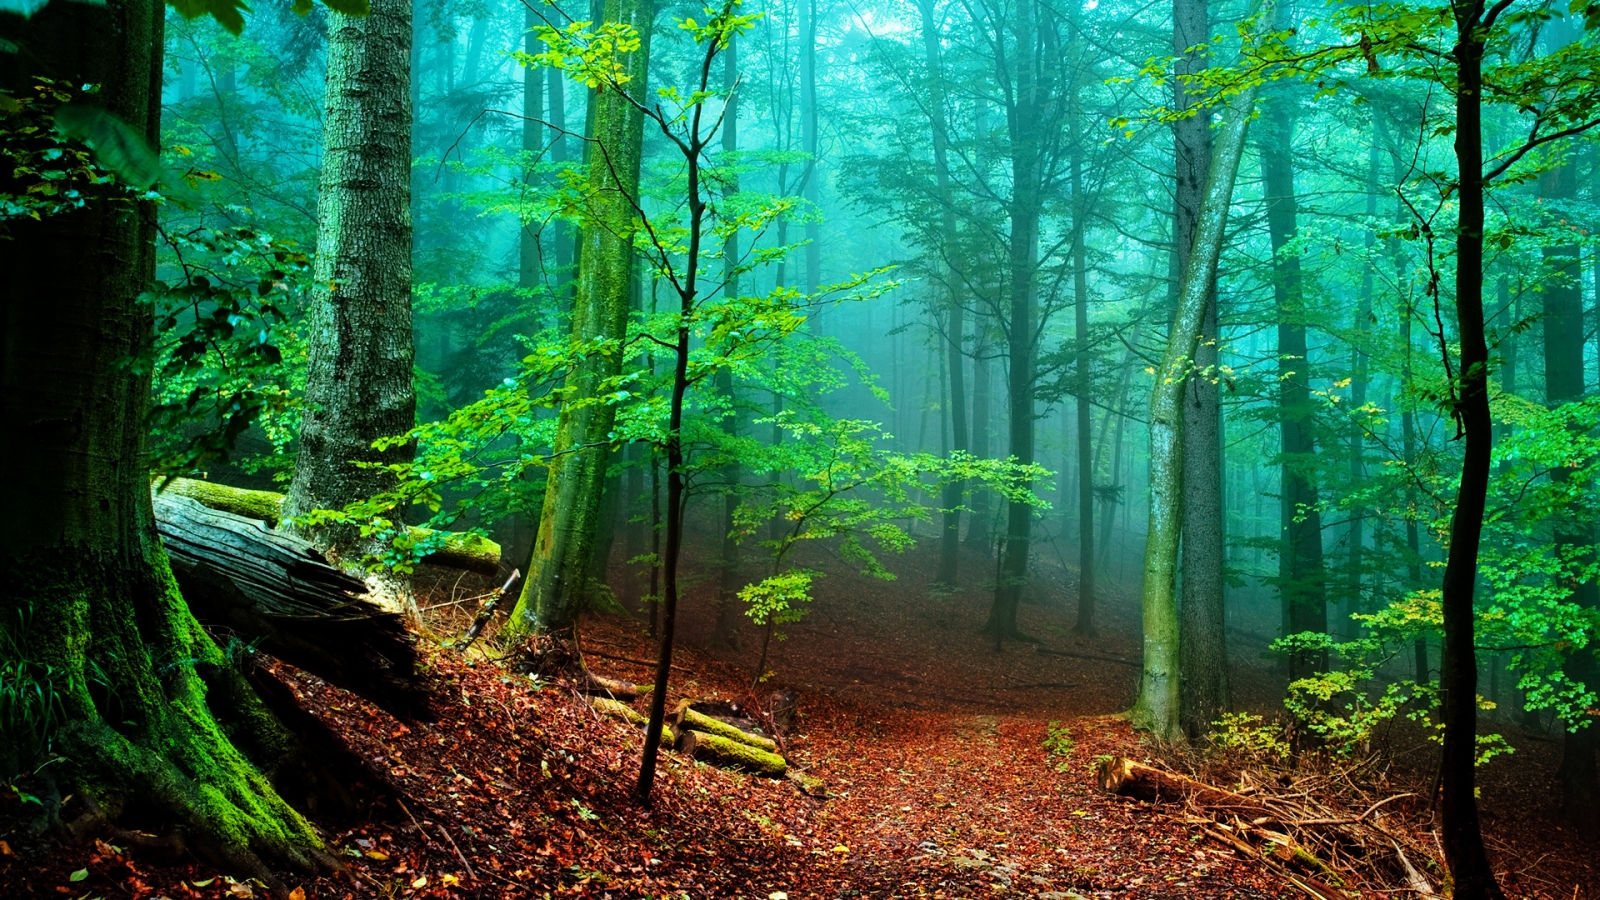 Forest Fog for 1600 x 900 HDTV resolution